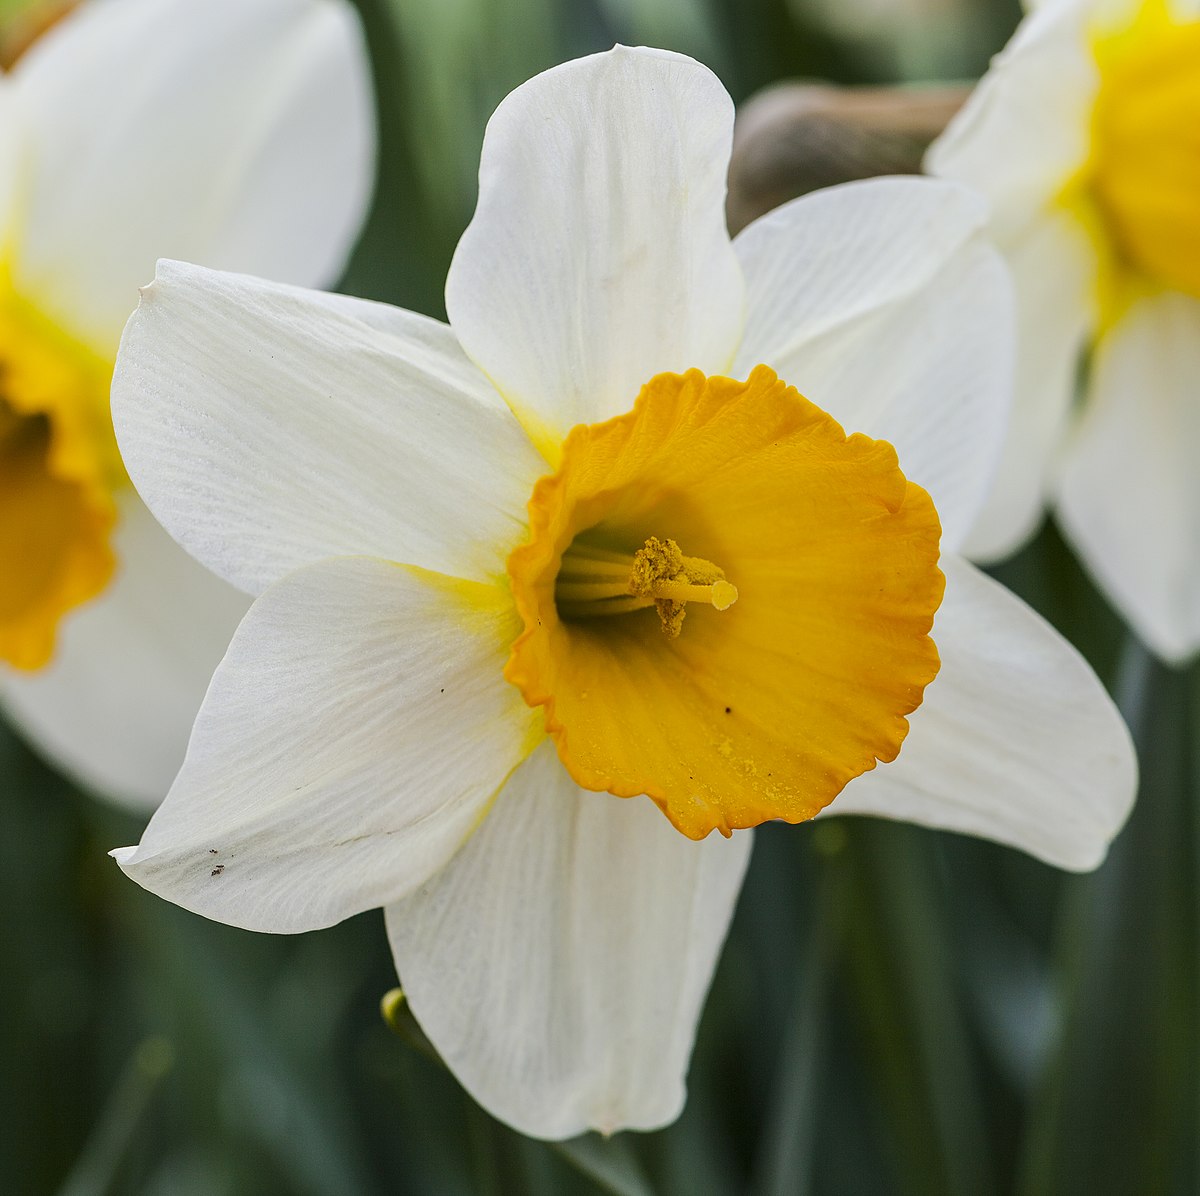 Narcissus - Wikipedia, la enciclopedia libre